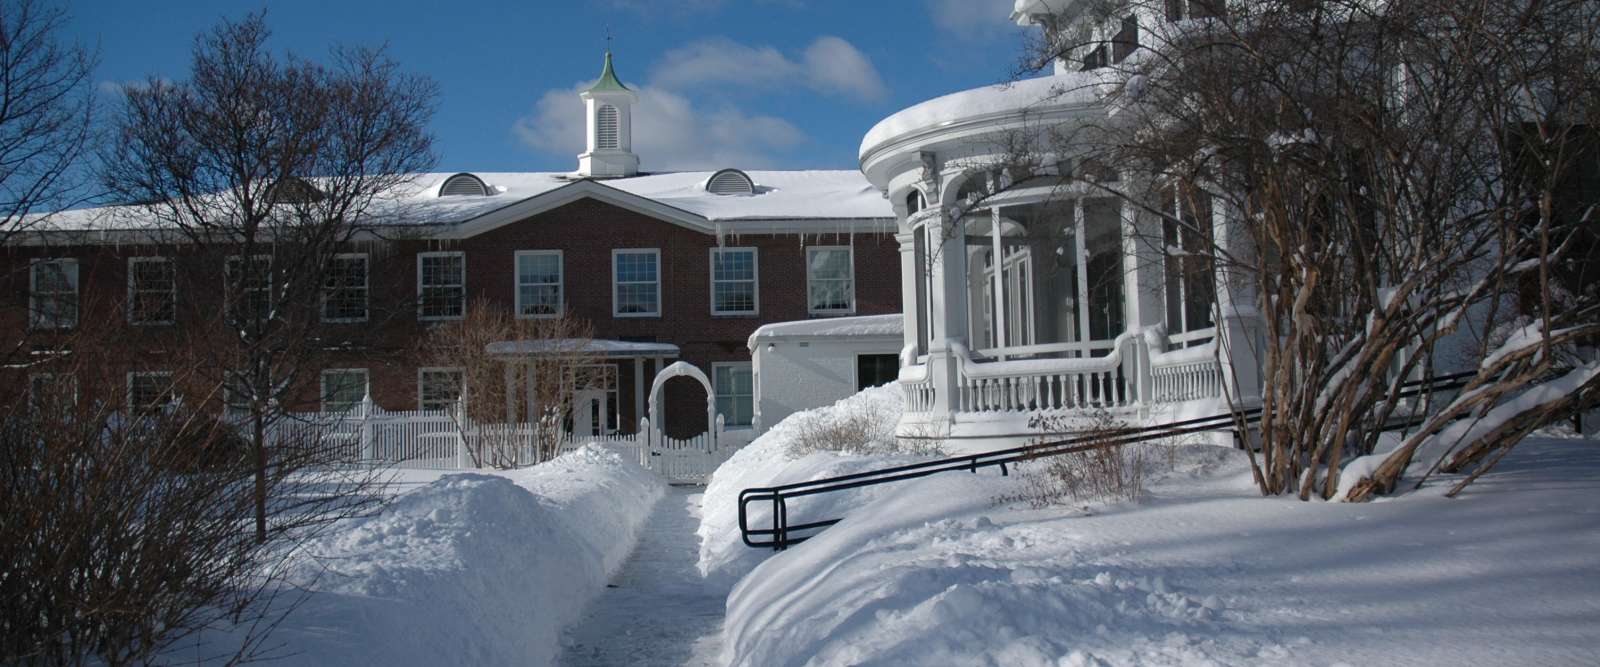 Winter Campus, 2011